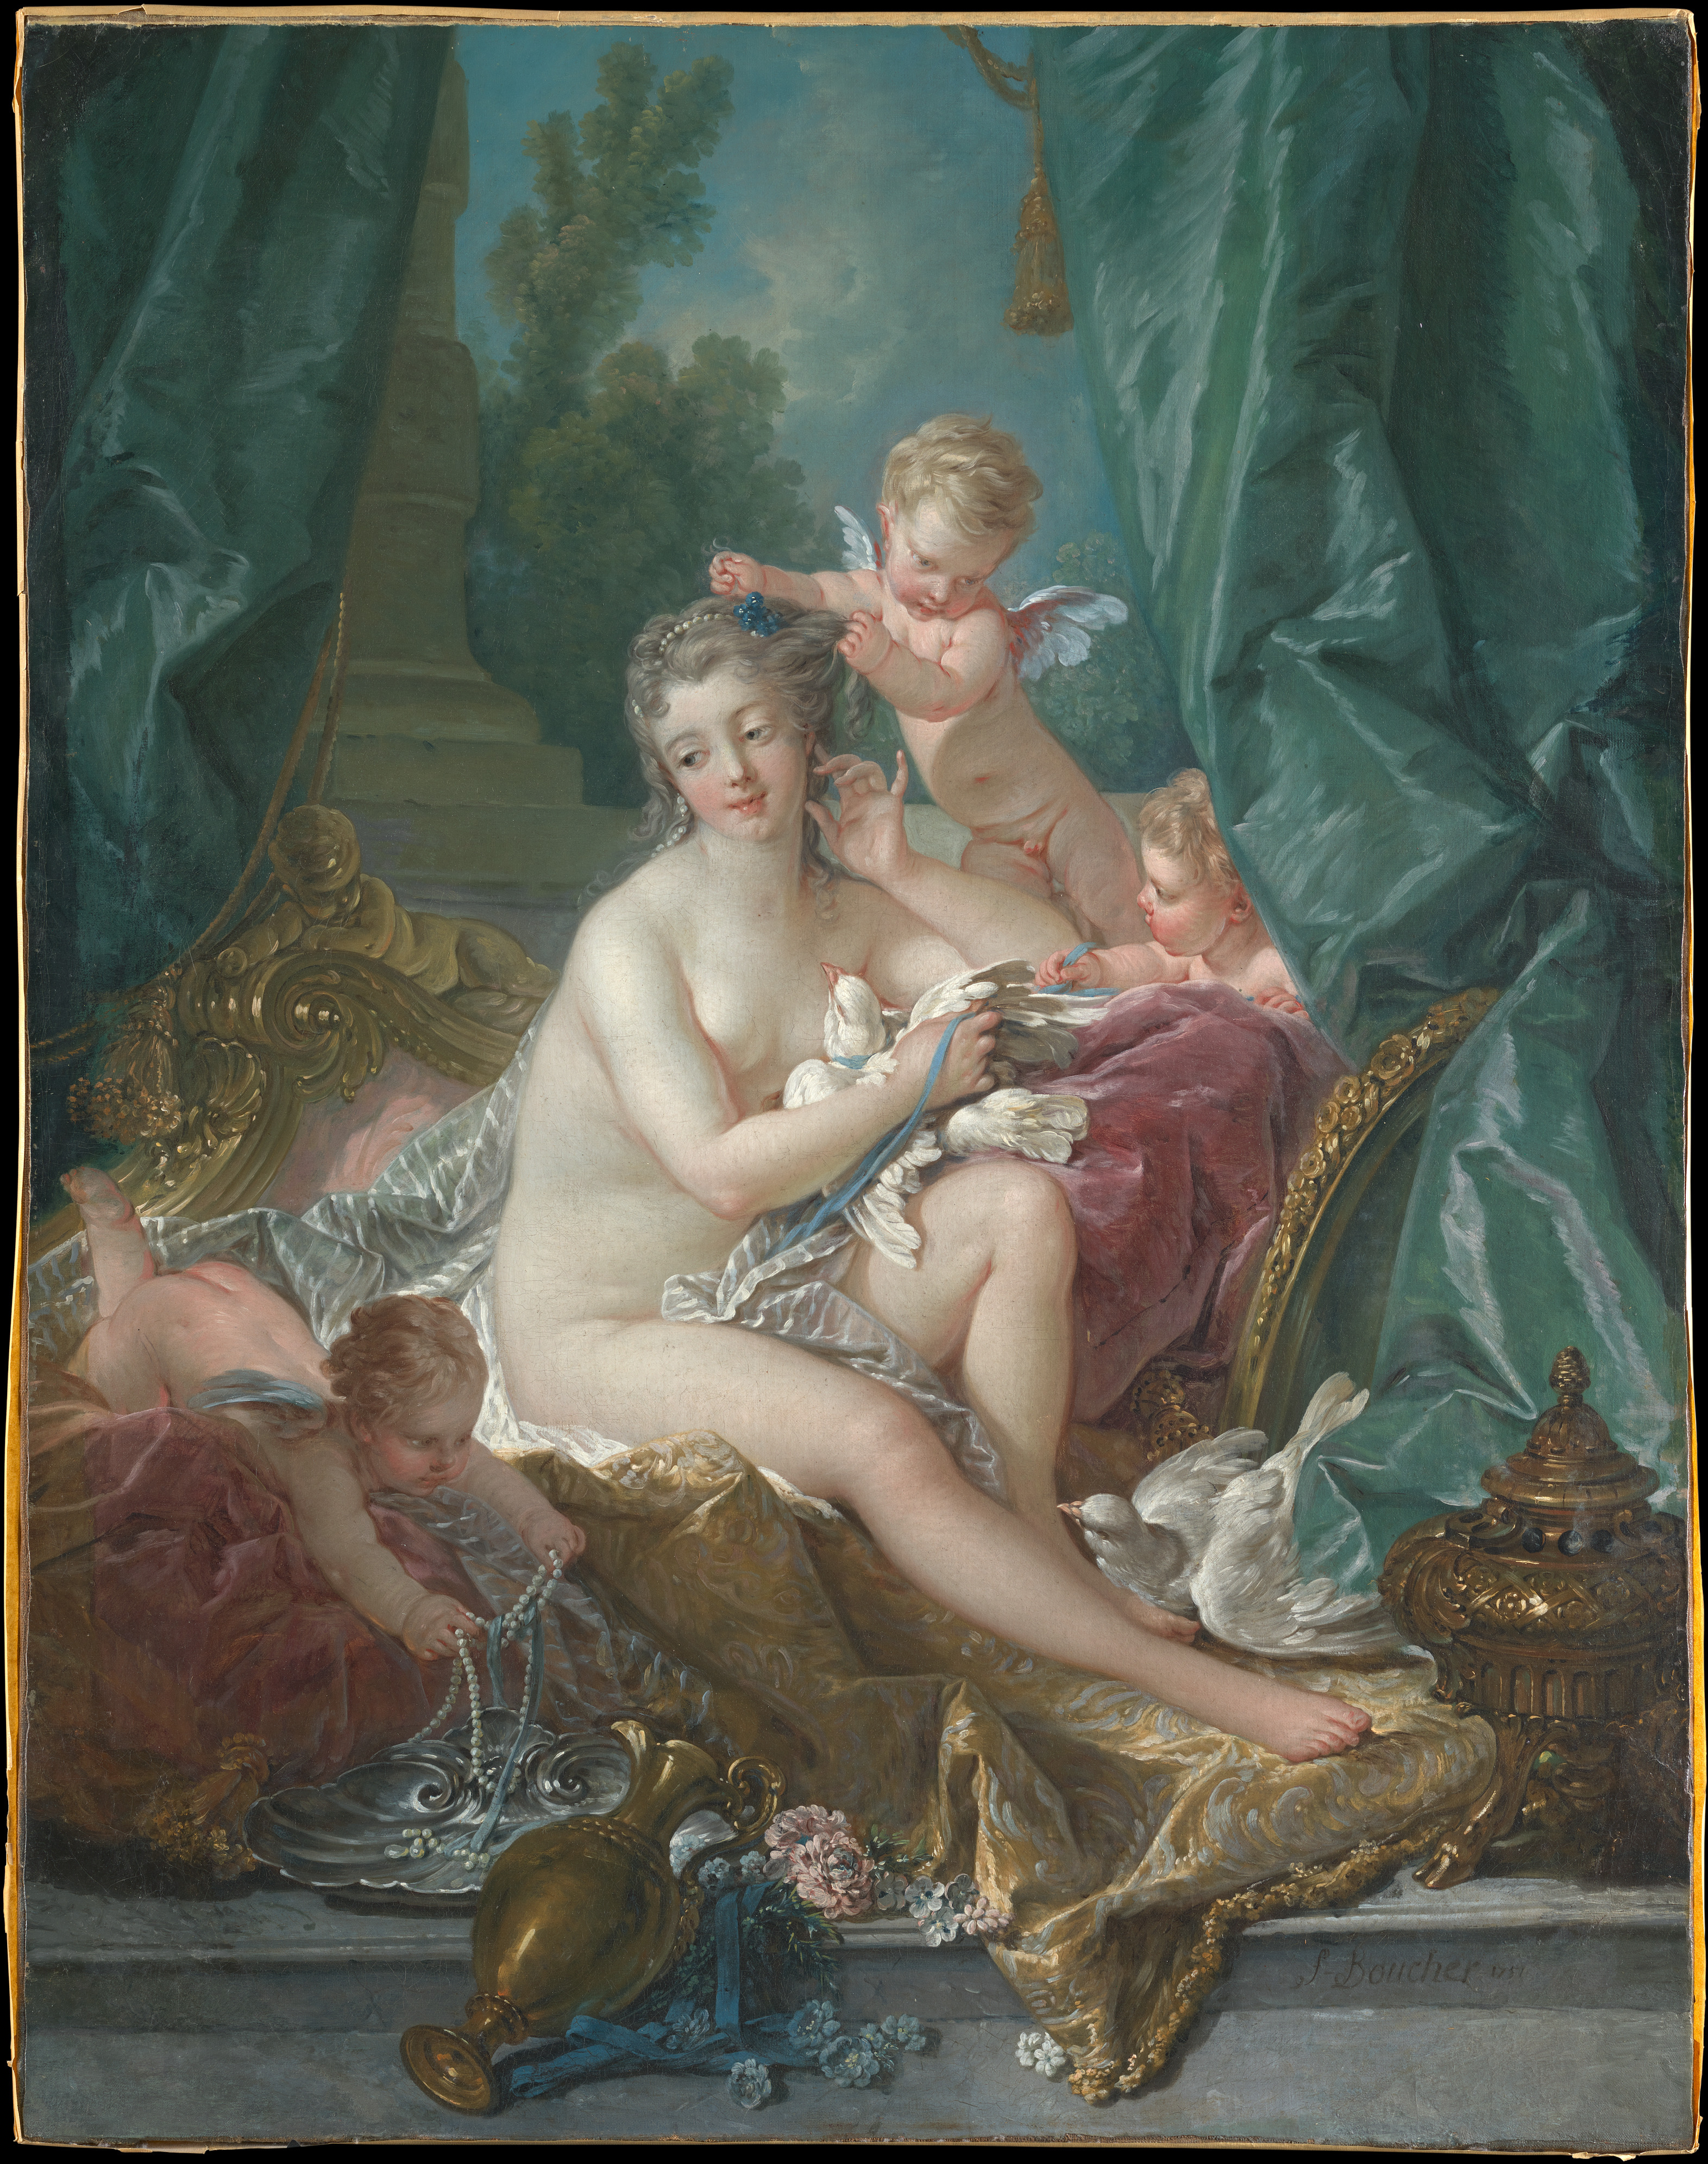 A Toilette de Venus by Francois Boucher - 1751 